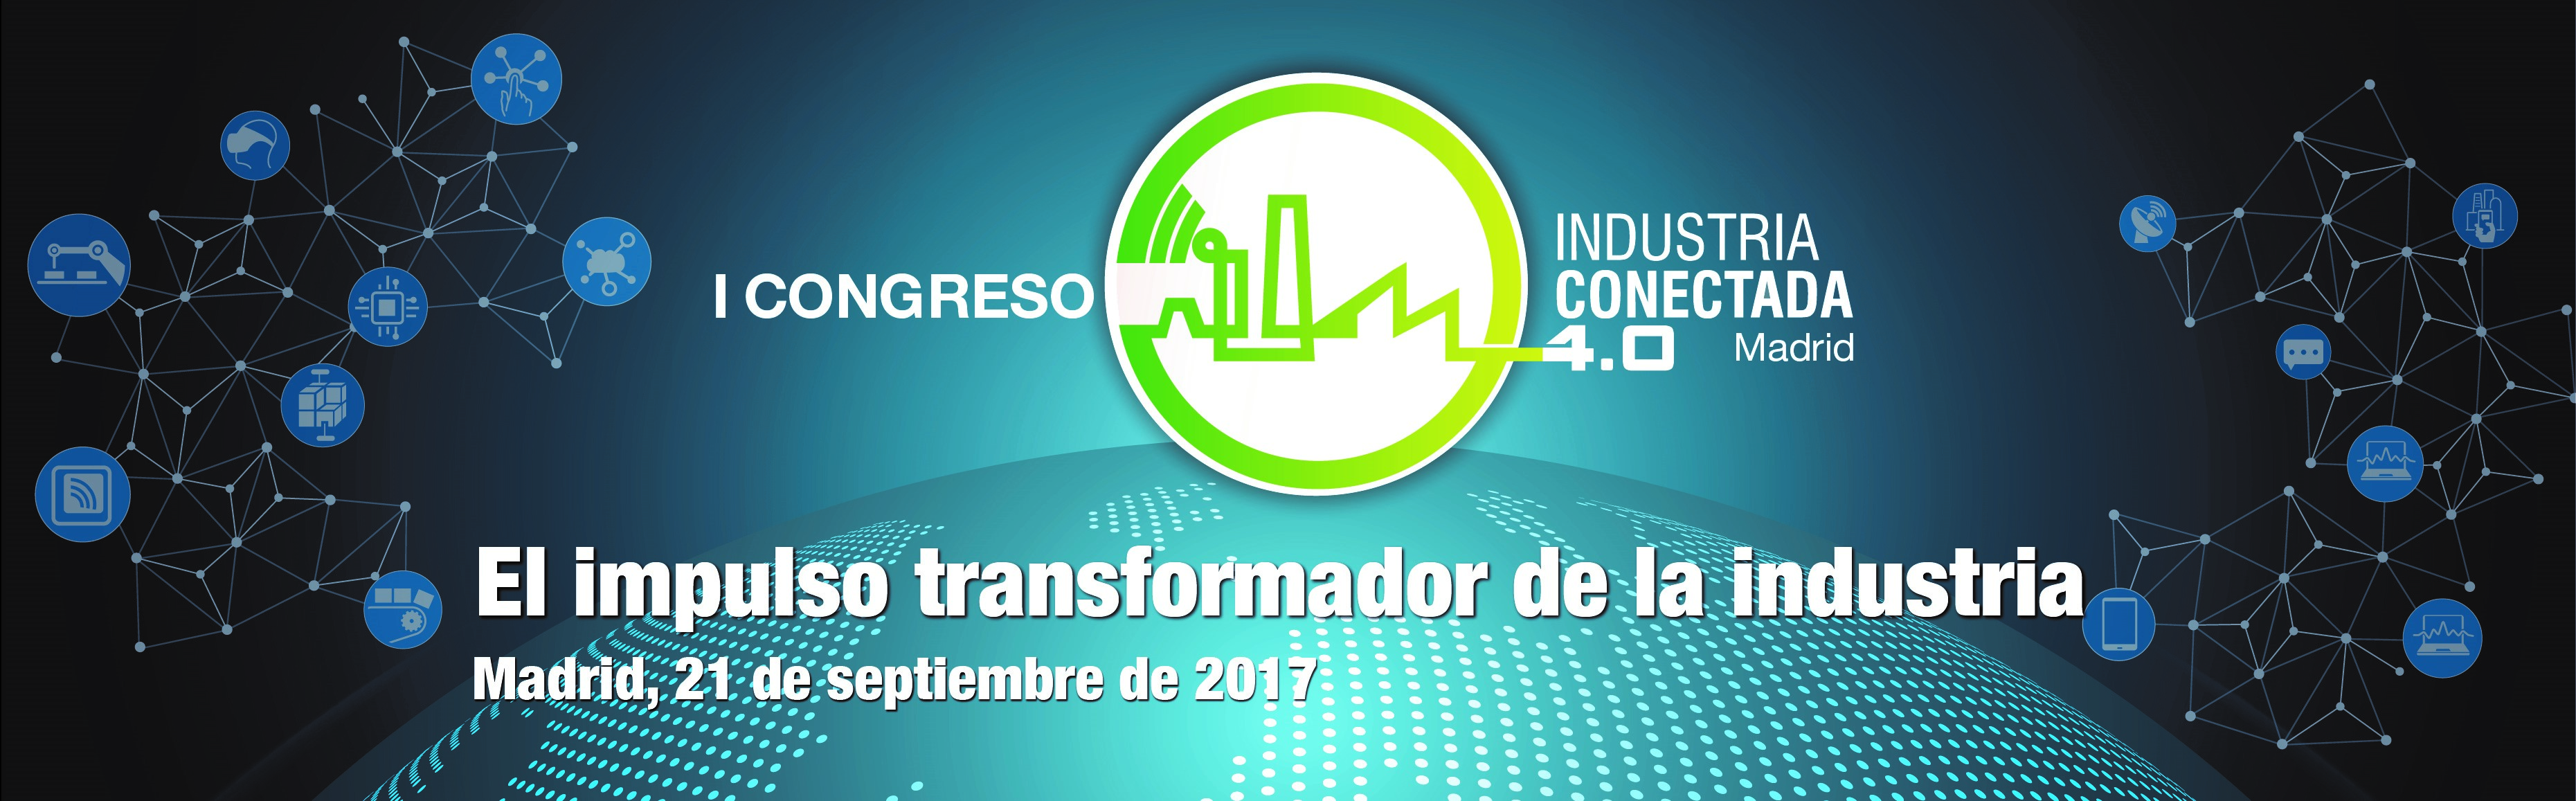 Imagen decorativa primer congreso Industria Conectada 4.0 El Impulso transformador de la insdustria